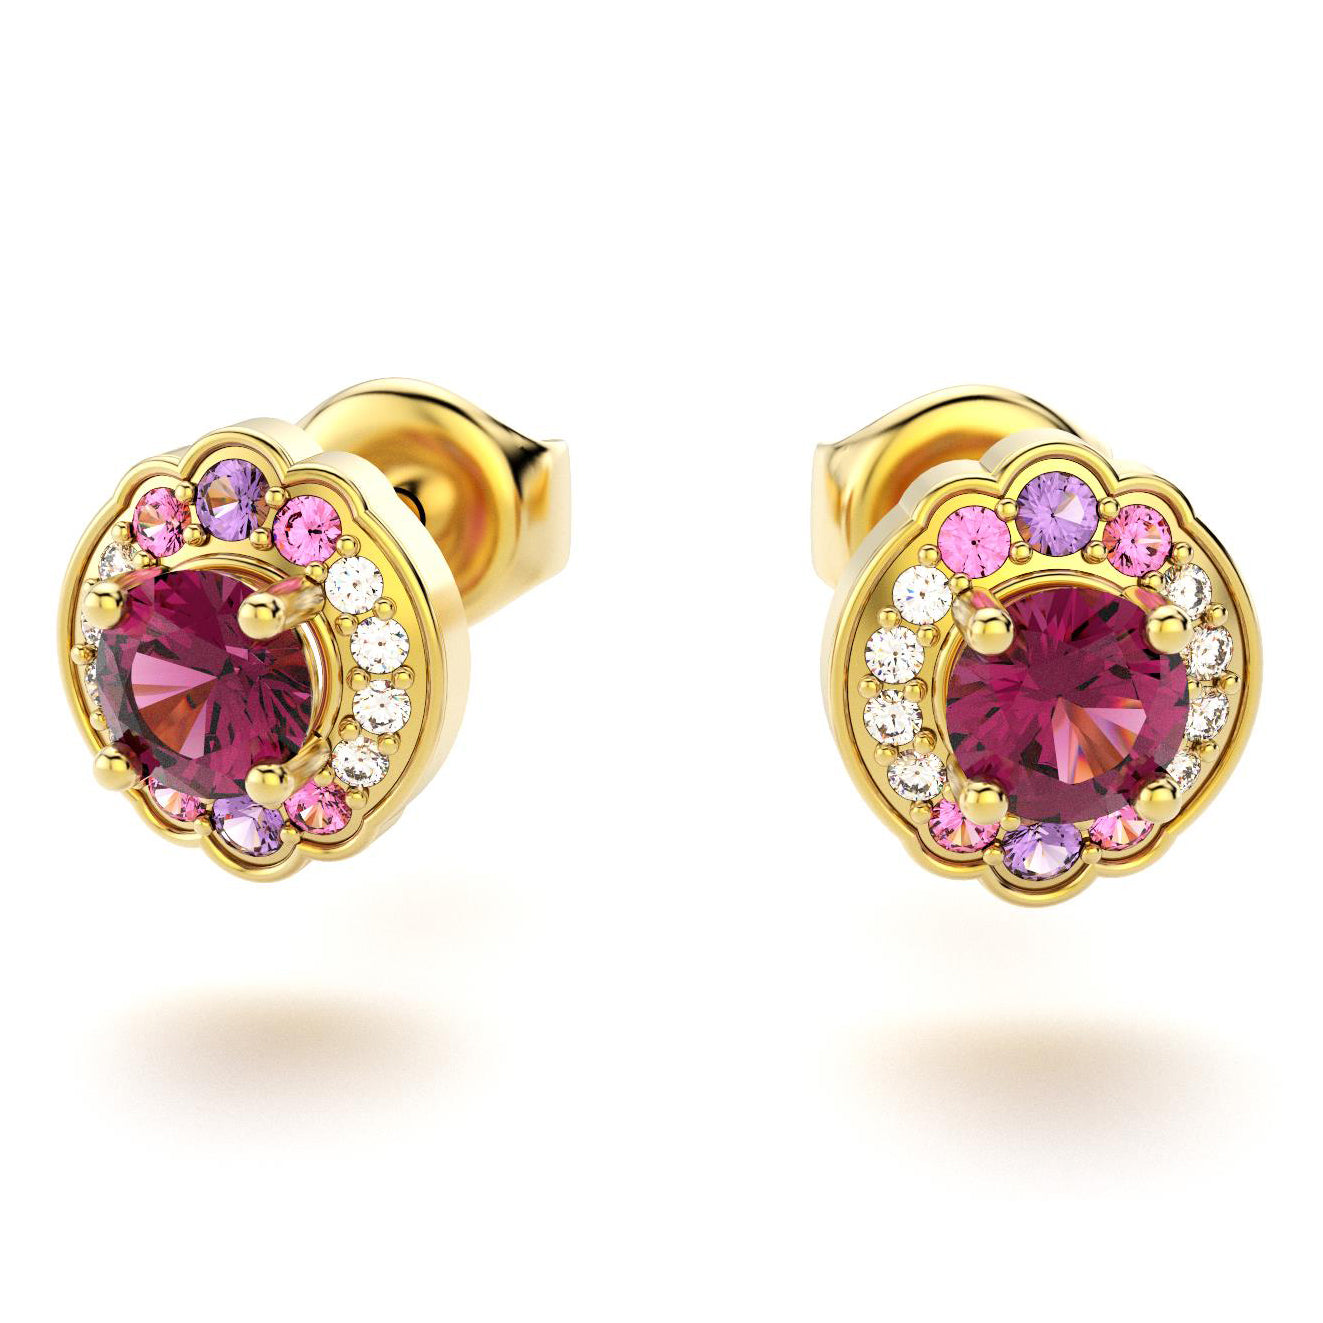 boucles oreilles syracuse pour en or jaune rhodolites avec diamants saphirs violets et saphirs roses